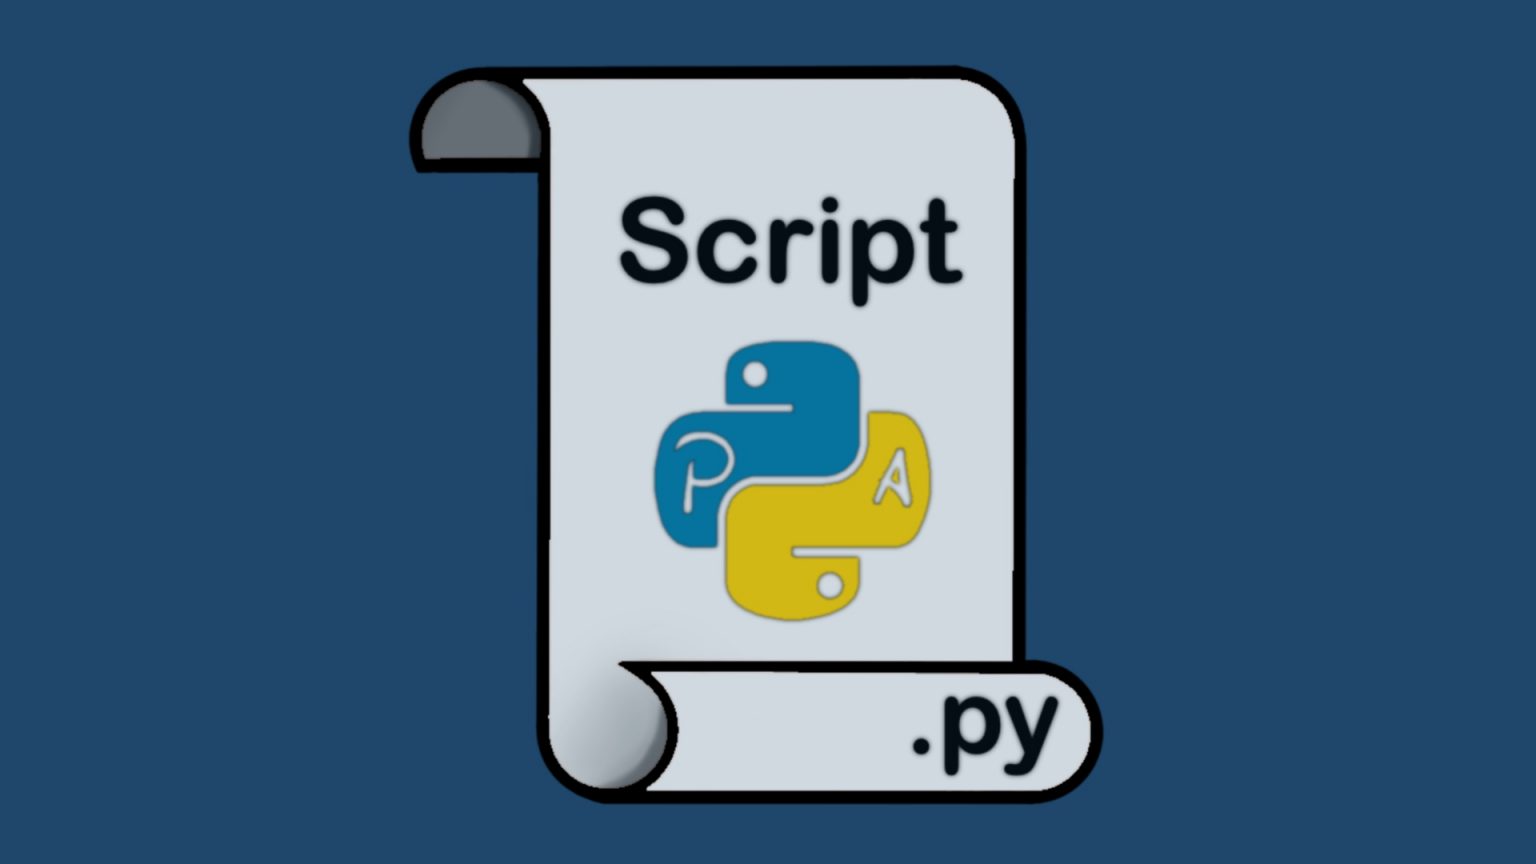 Отправка через python. Python script. Написание скриптов на Python. Pythonista.